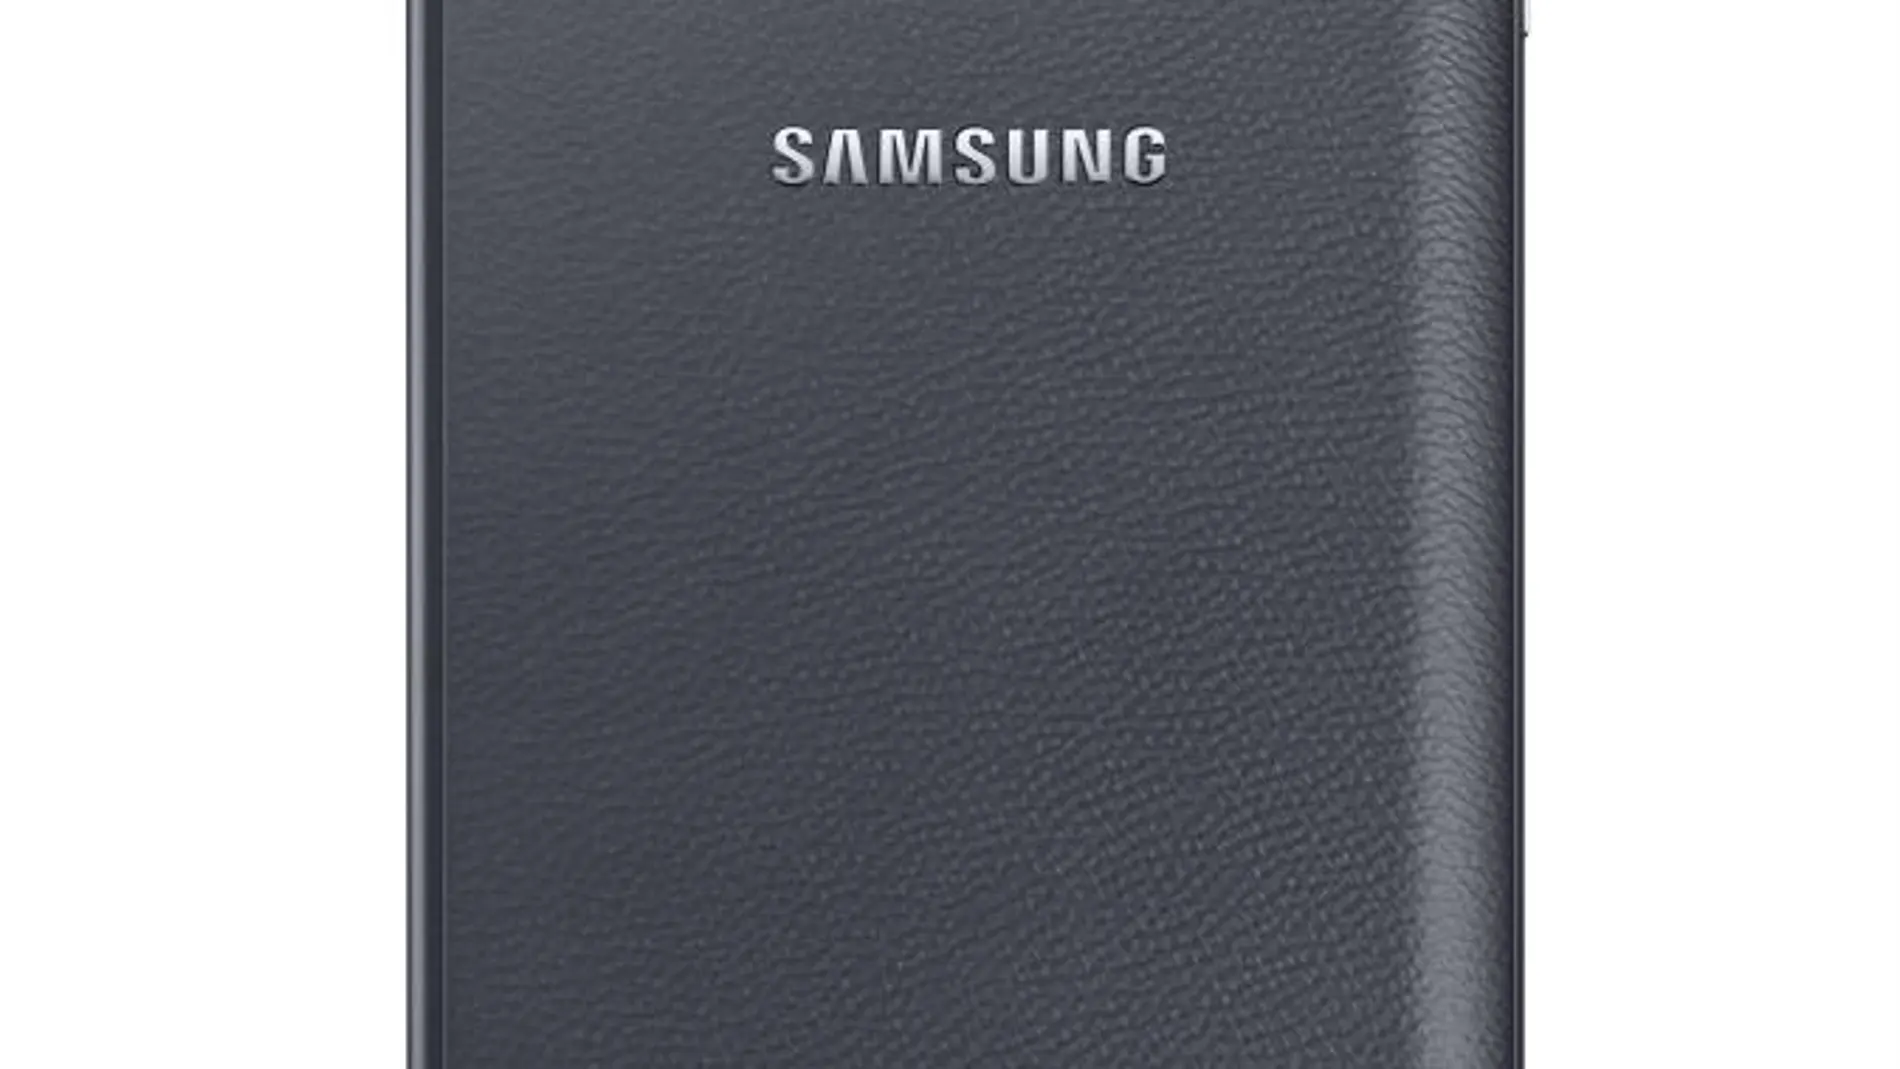 Samsung sorprende con la pantalla curva del Galaxy Note Edge